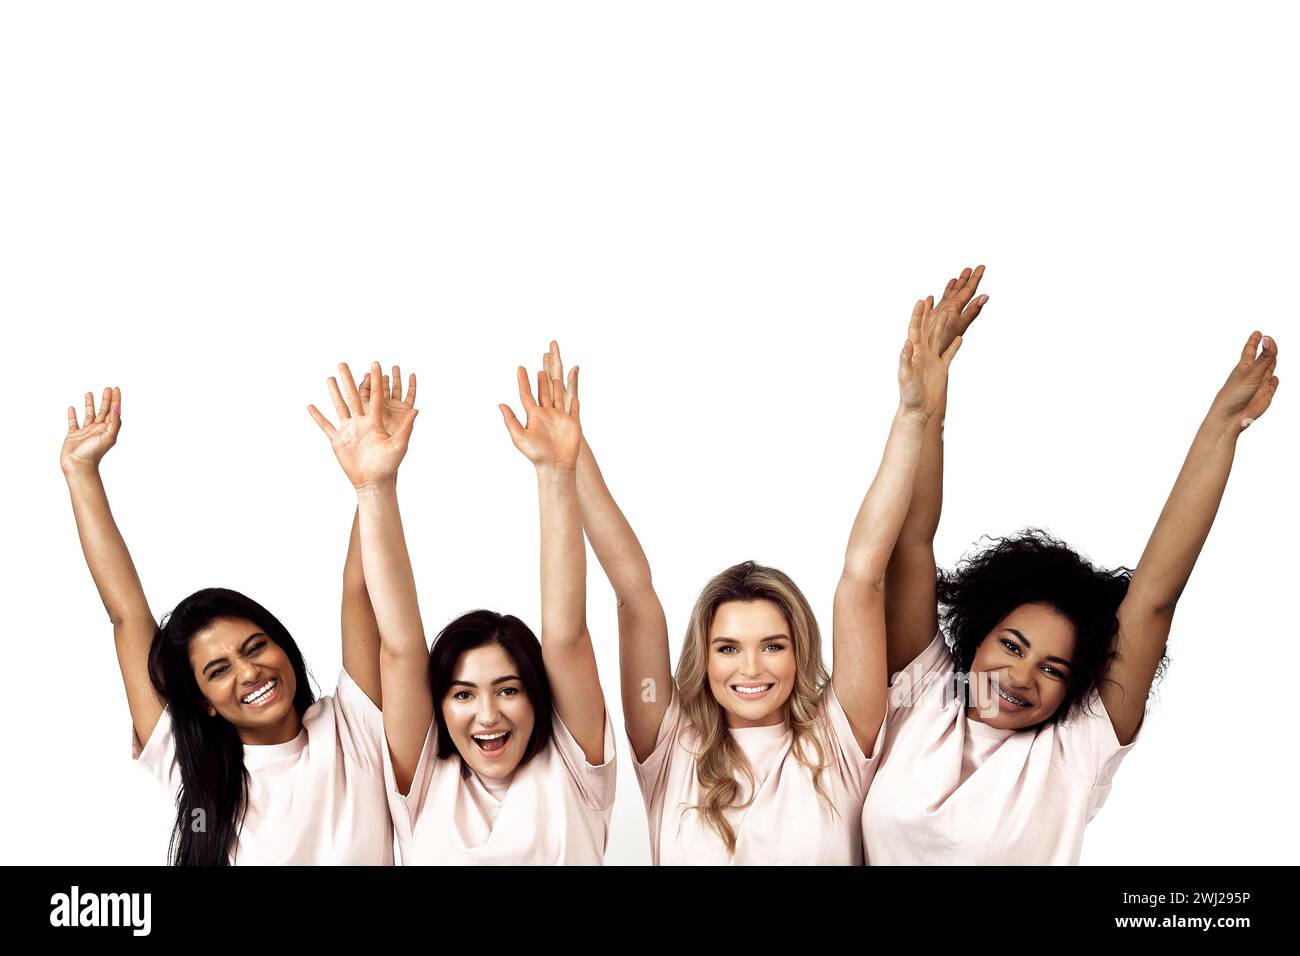 Multikulturelle Vielfalt und Freundschaft. Multiethnische Gruppe glücklicher Frauen, die vor weißem Hintergrund die Hände heben Stockfoto